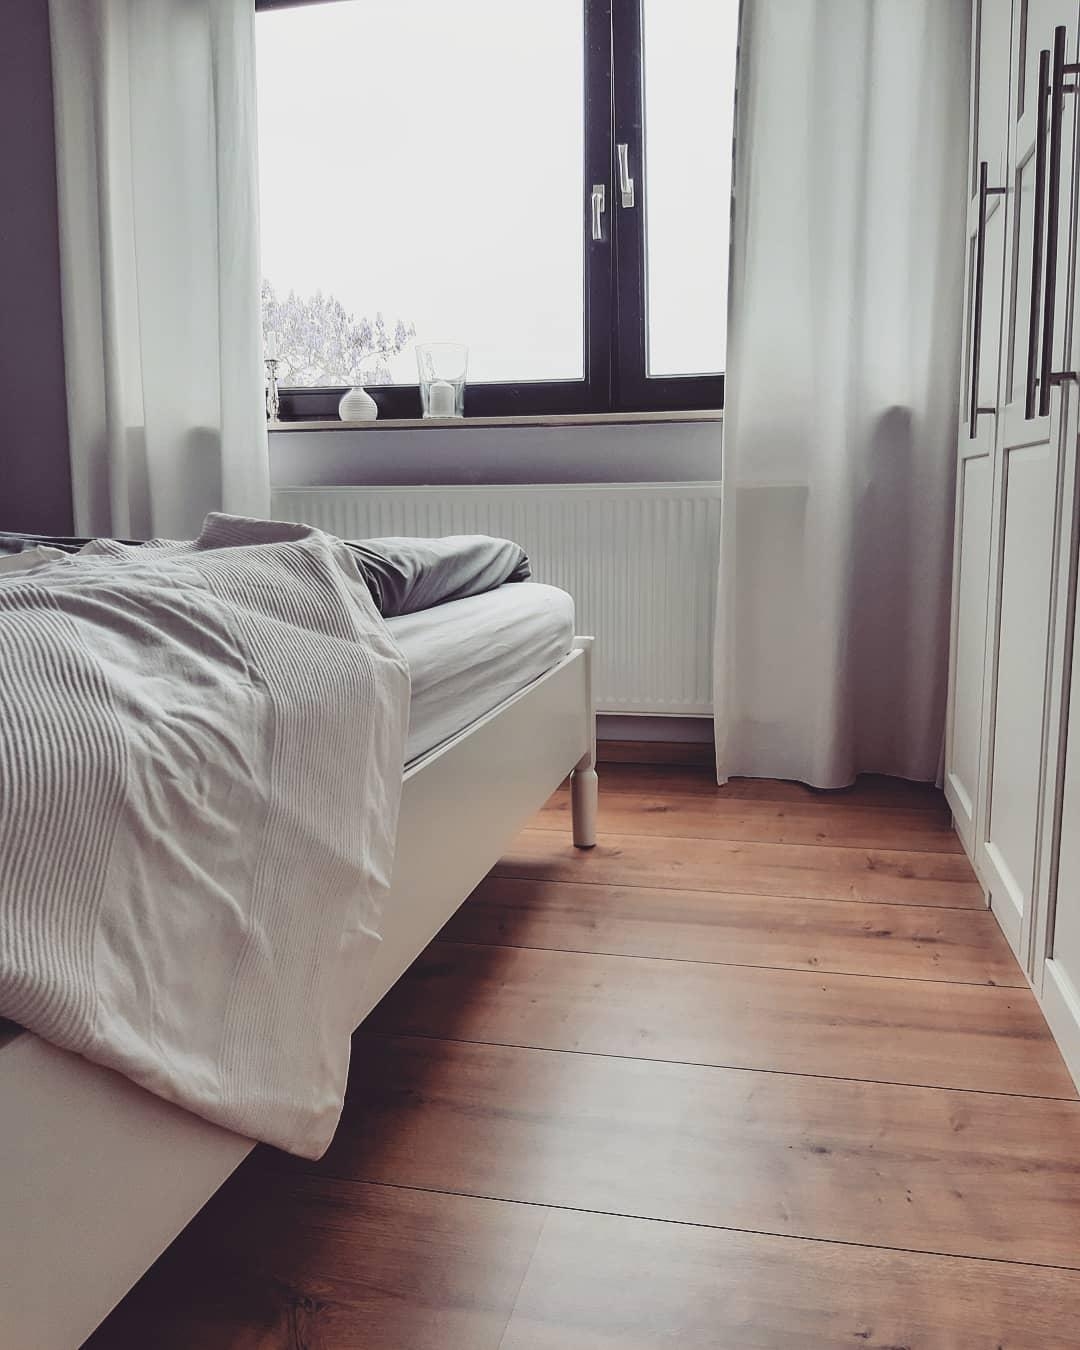 Warmer Laminatboden und helle Möbel und Vorhänge...unser #schlafzimmer 🖤 #laminat #bedroom #gemütlich #bett #decke